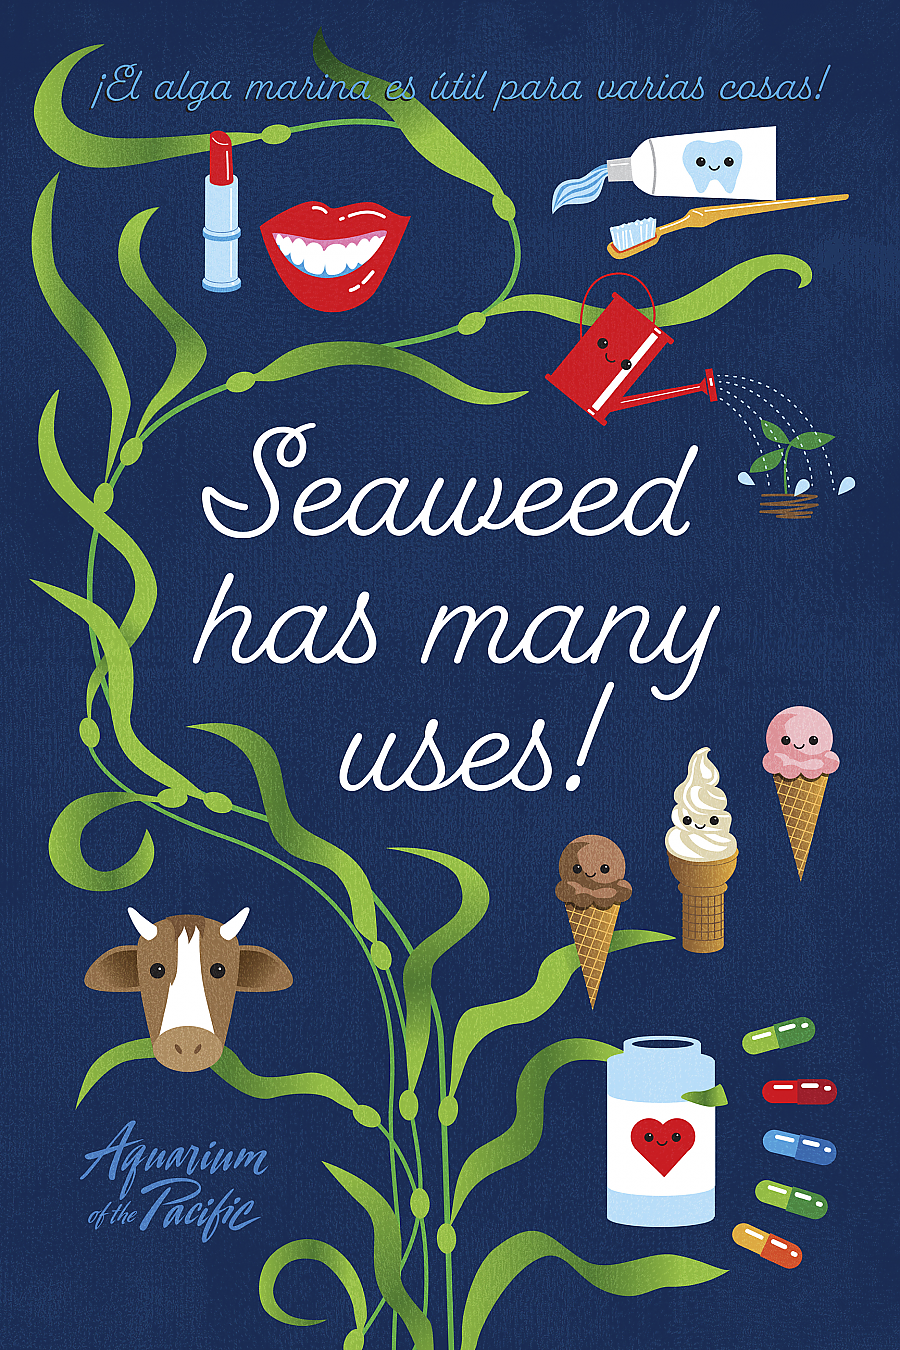 Cultivo de algas marinas es una alternativa sustentable a la